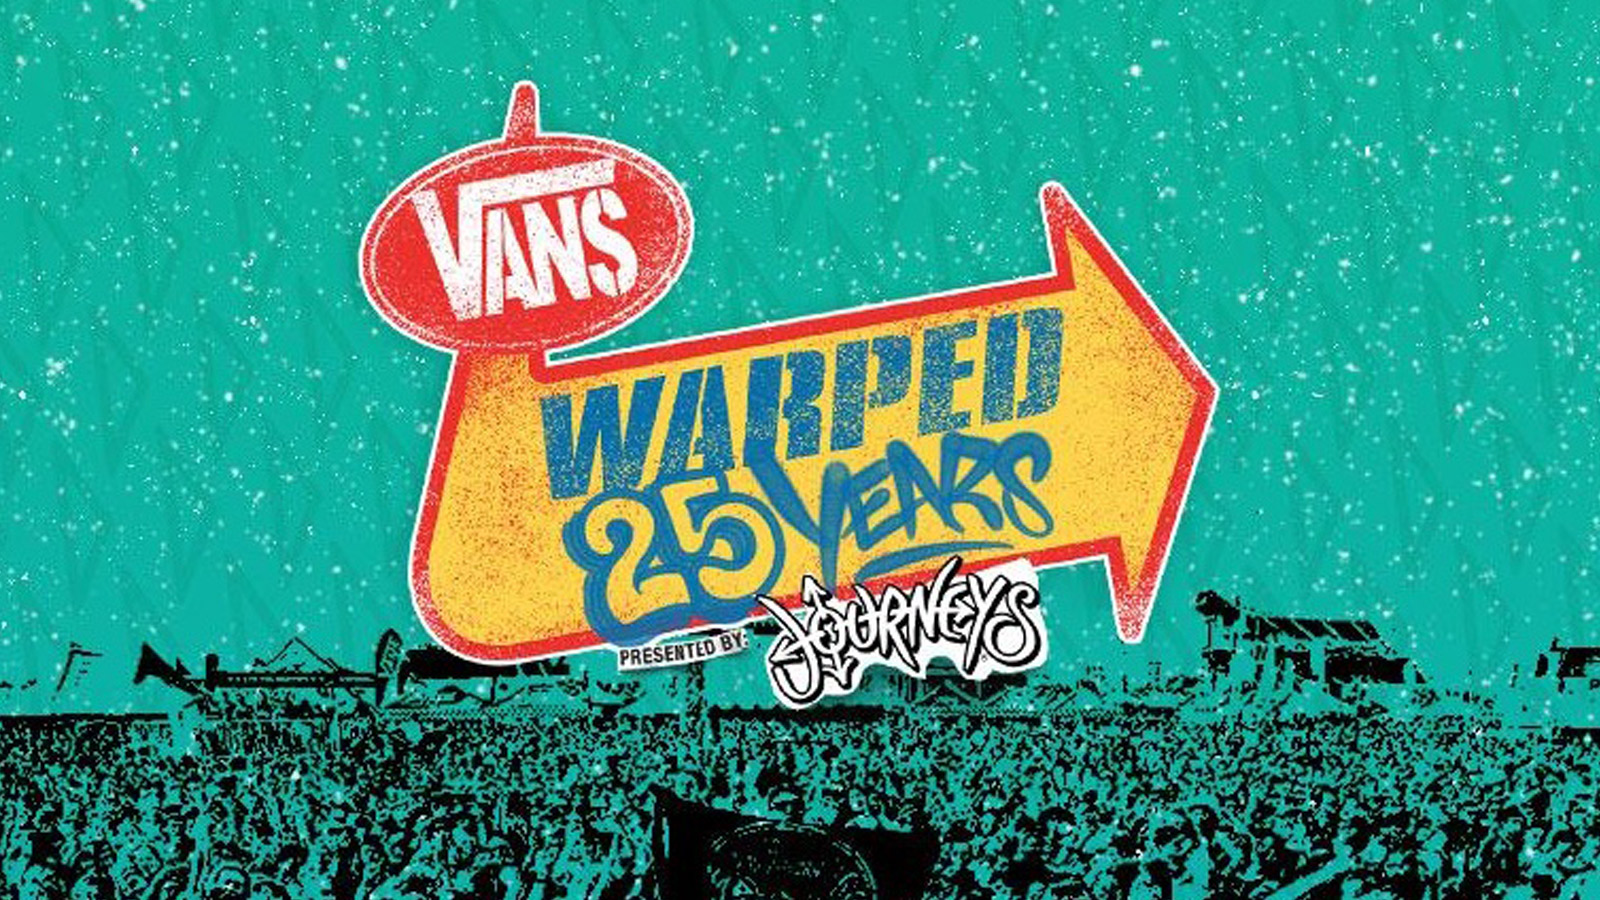 warped tour 2010 poster